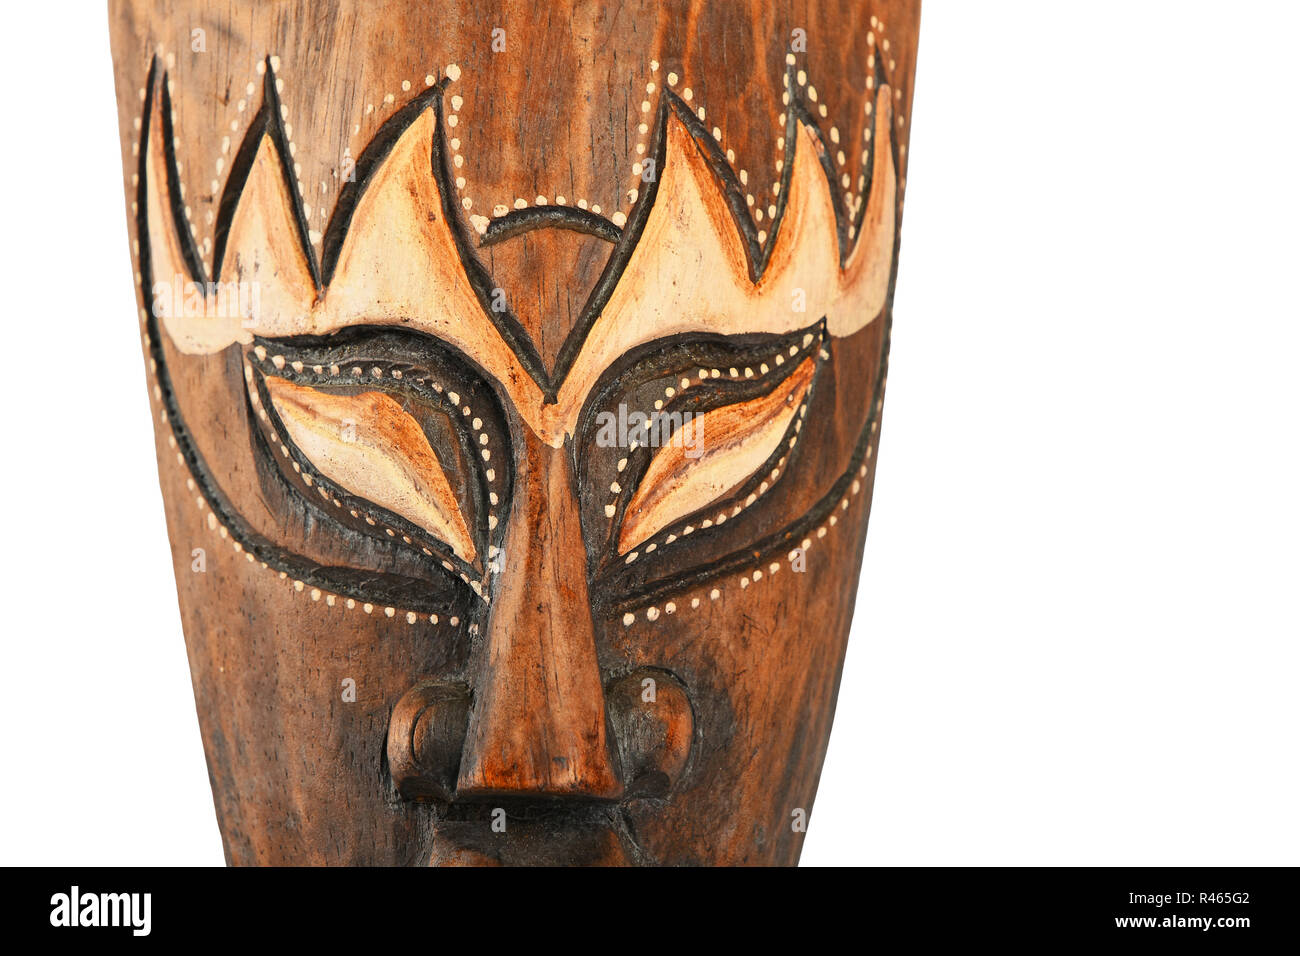 En bois traditionnel asiatique masque peint en brun Banque D'Images